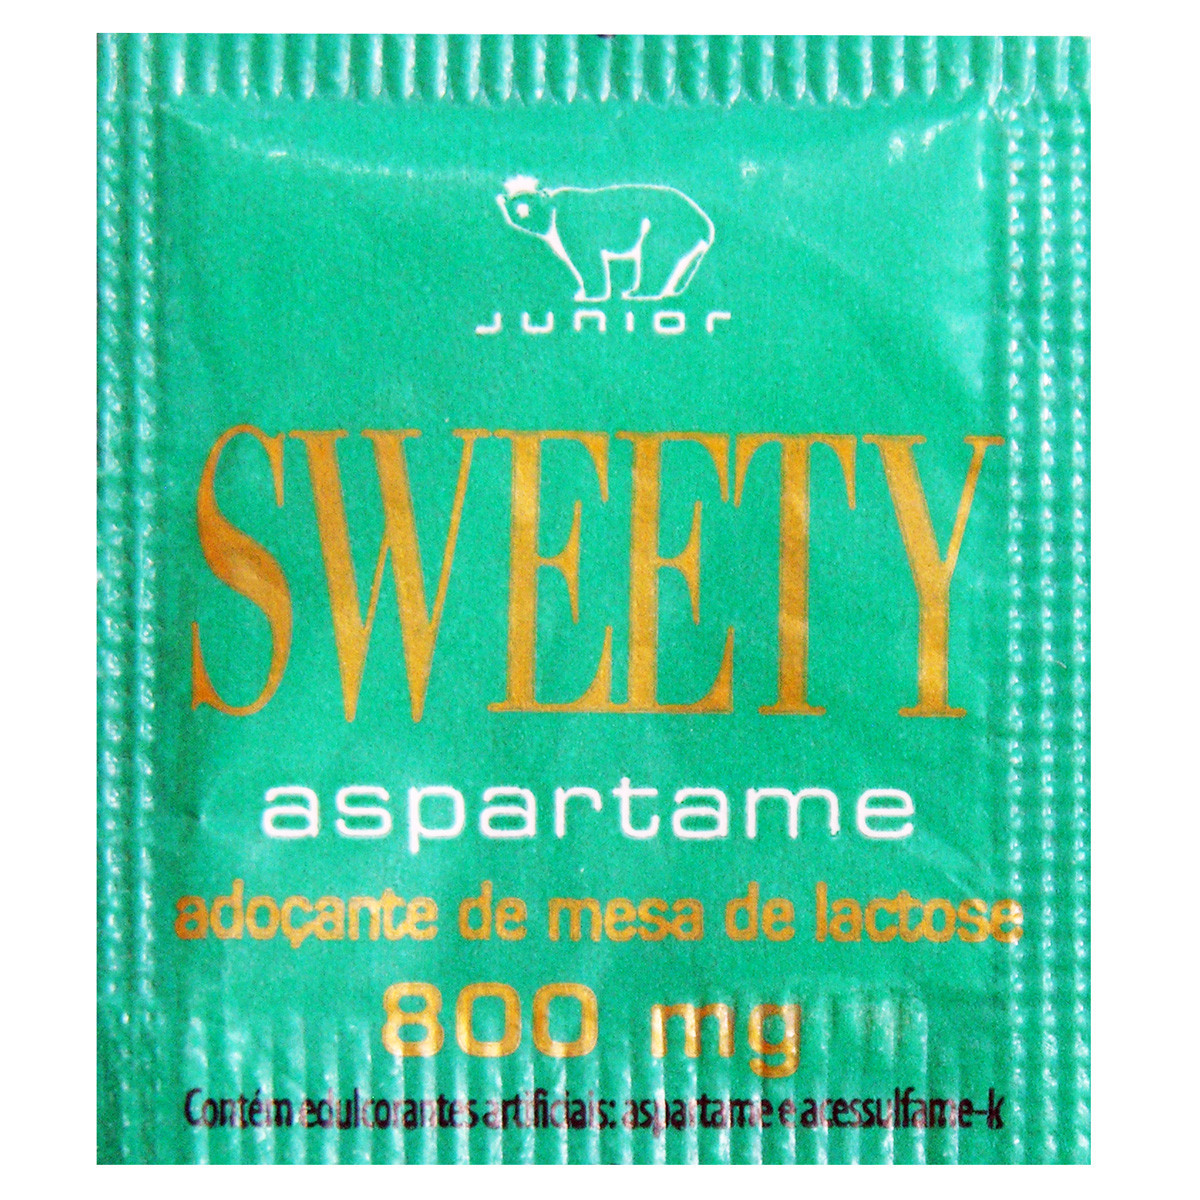 Adoçante Sweety - 1000 unidades